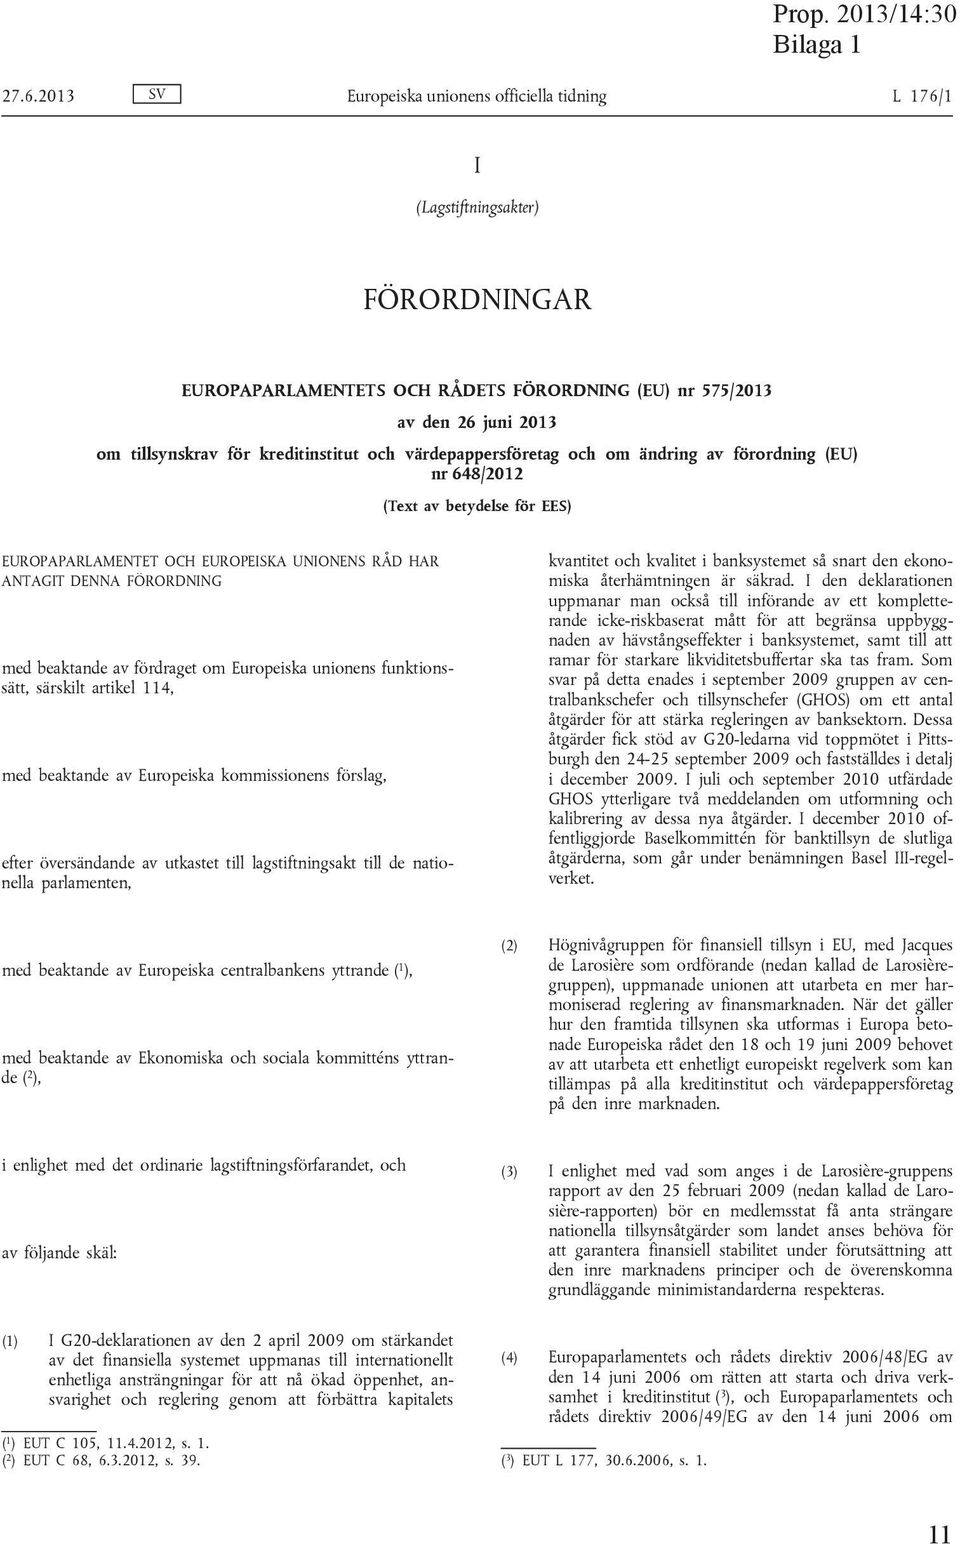 beaktande av fördraget om Europeiska unionens funktionssätt, särskilt artikel 114, med beaktande av Europeiska kommissionens förslag, efter översändande av utkastet till lagstiftningsakt till de